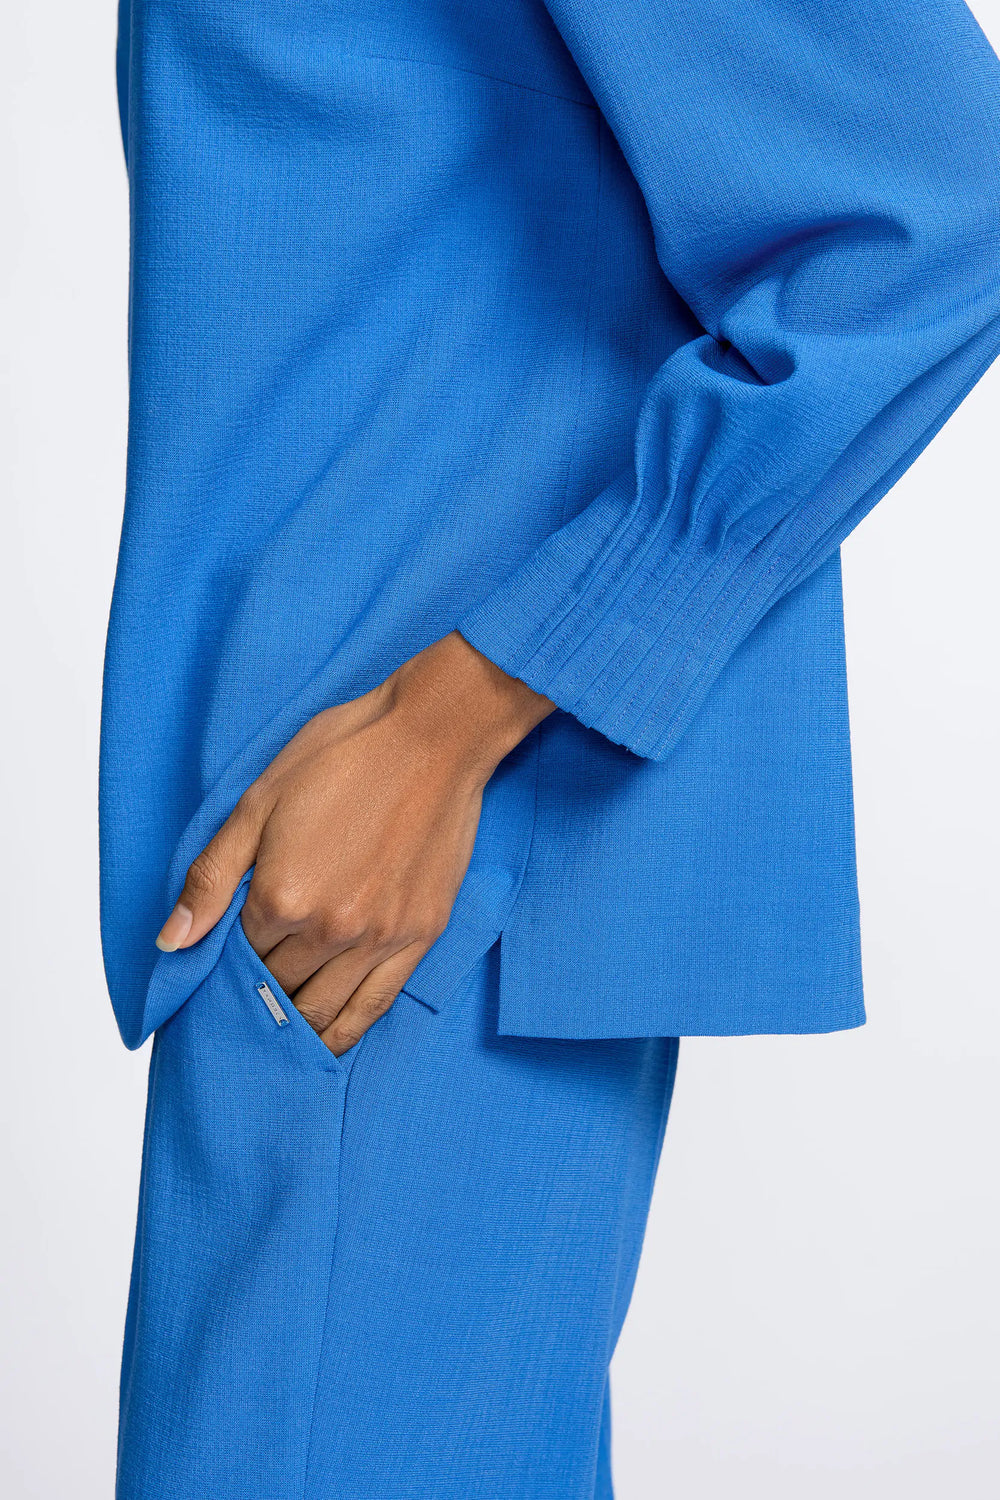 French blue blouse van Milano crêpe - xandres - - grote maten - dameskleding - kledingwinkel - herent - leuven